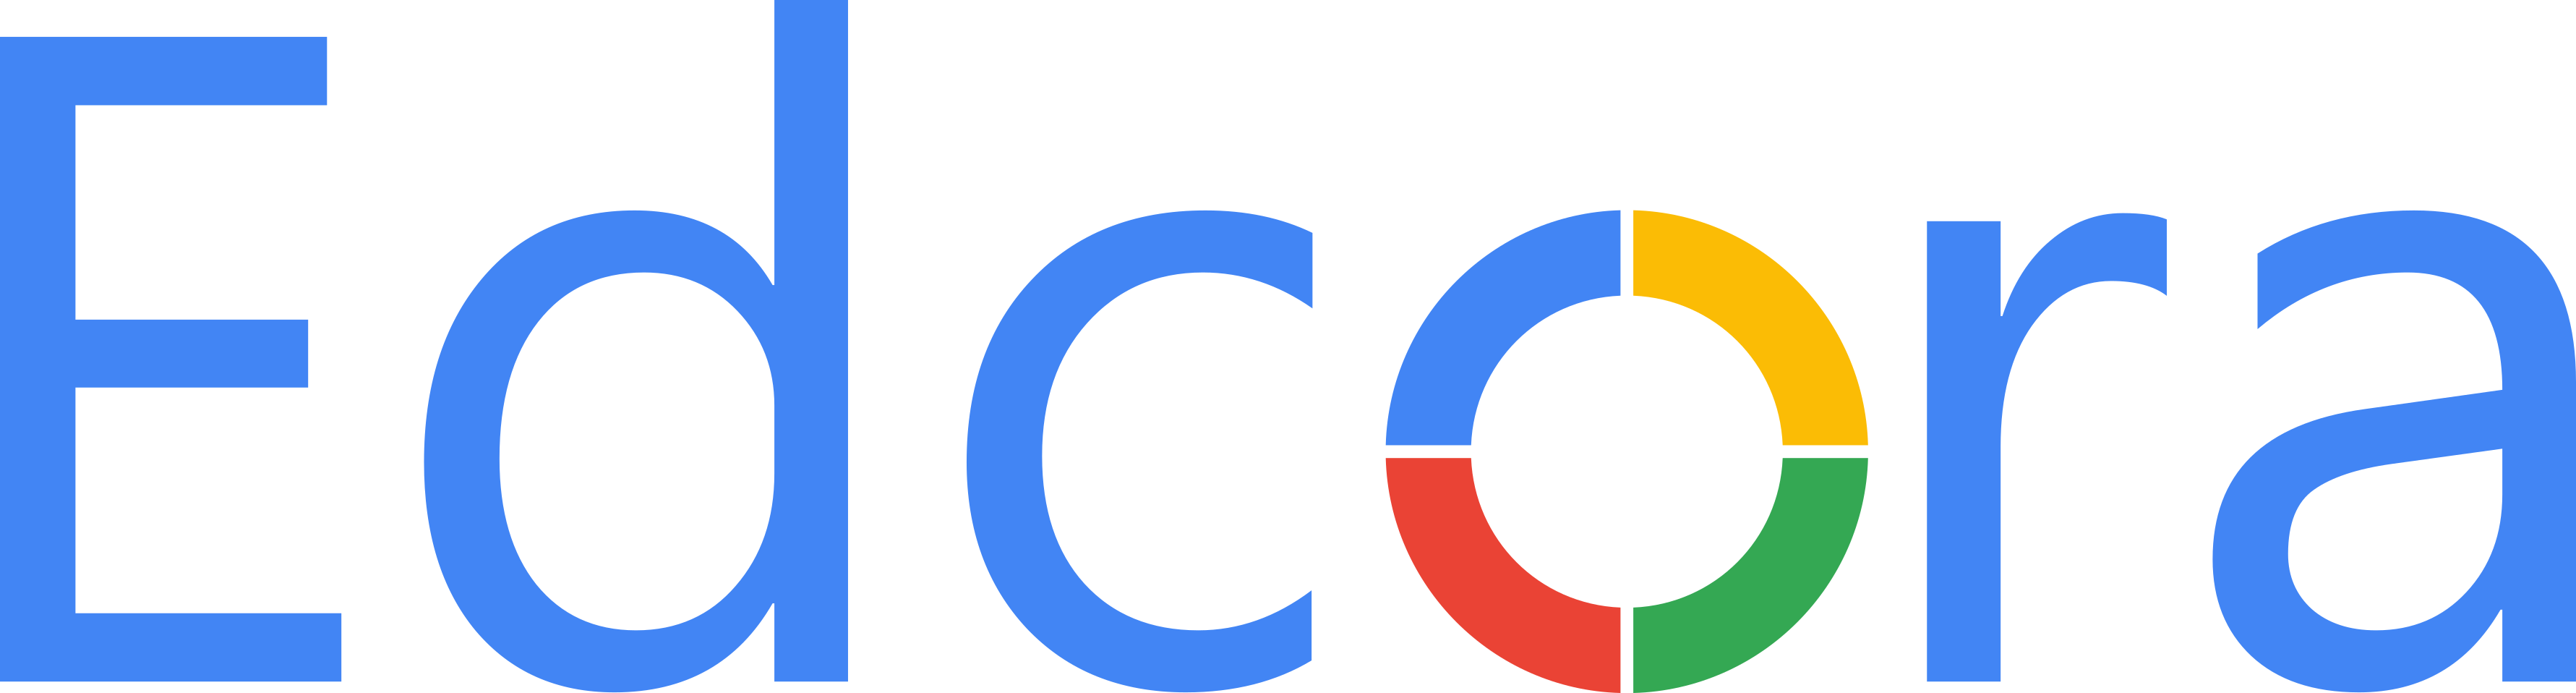 Logo edcora.ro